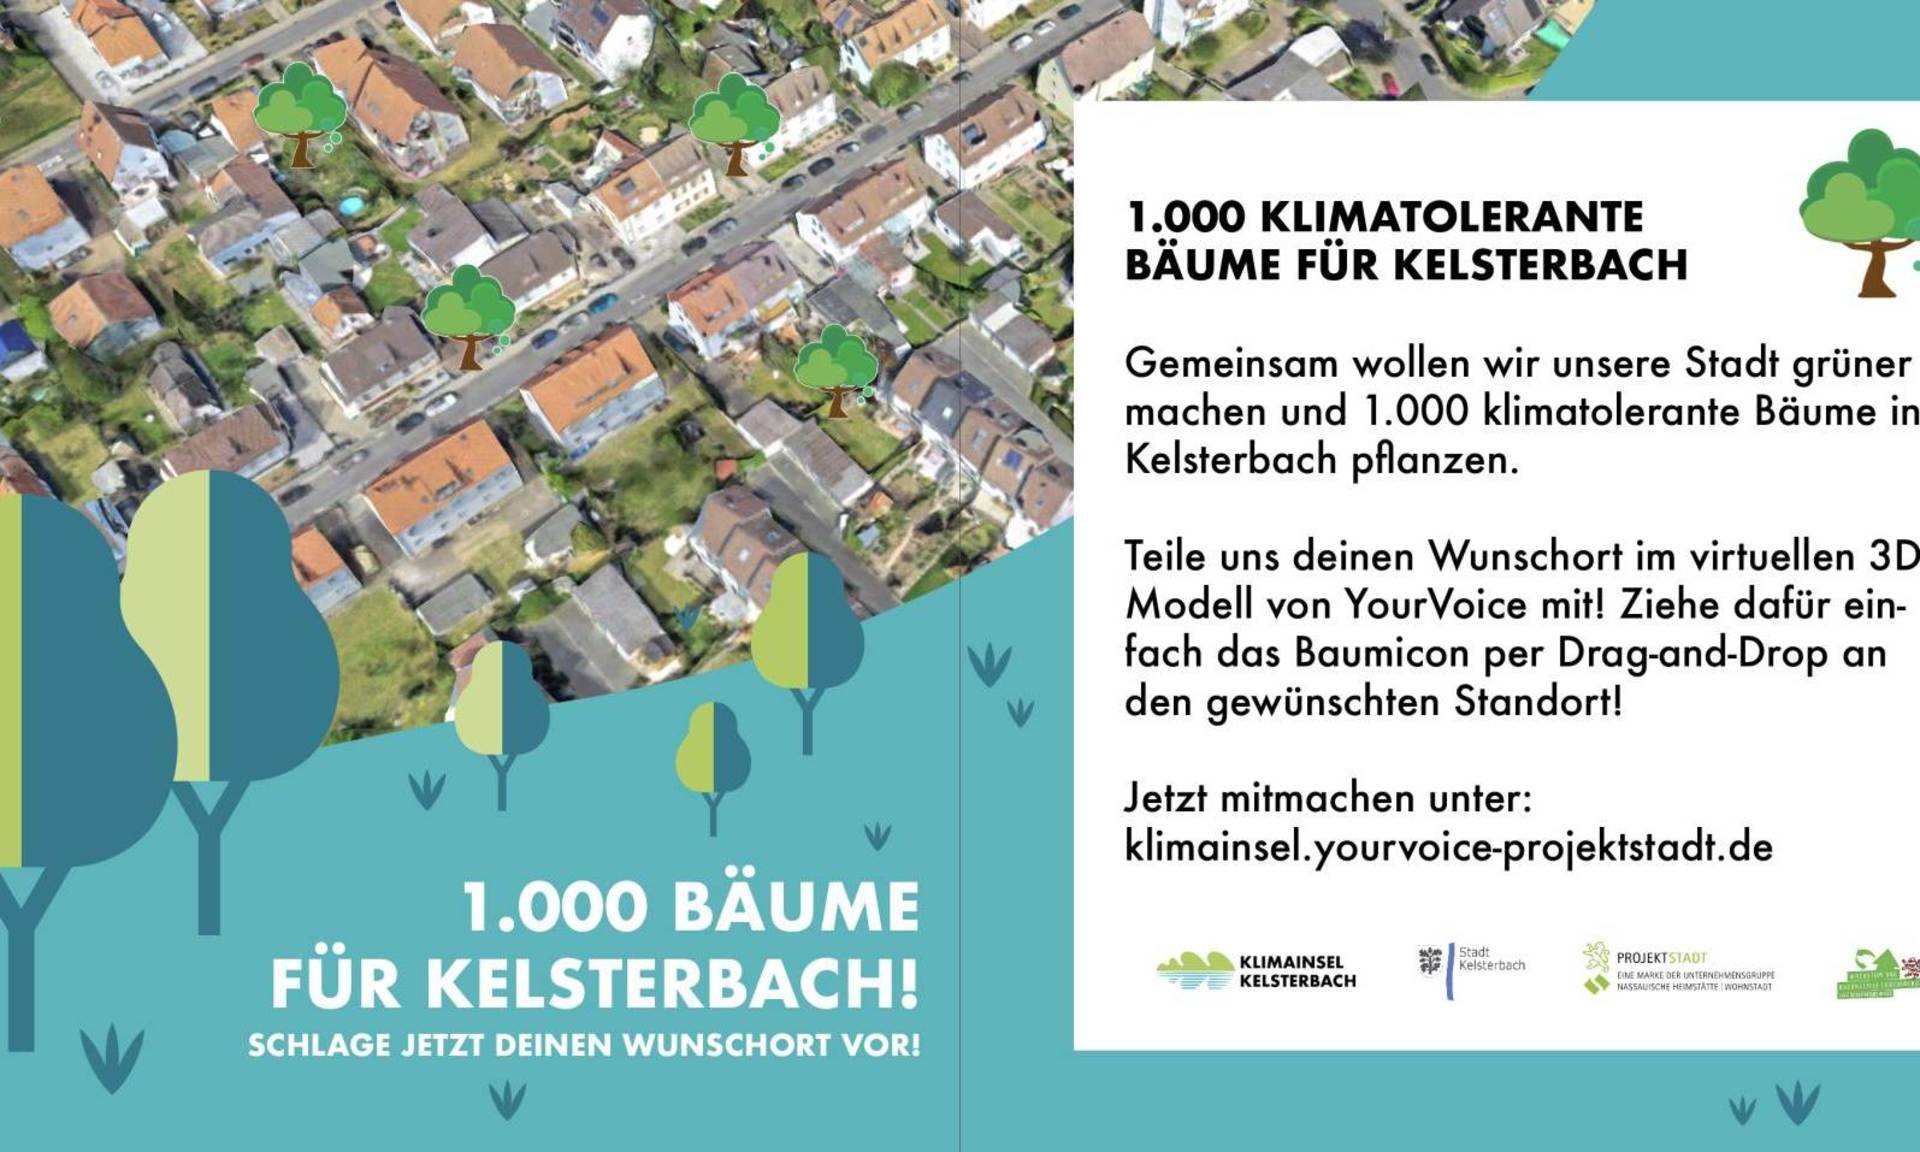 Grafik, die das Projekt „1000 klimatolerante Bäume“ erläutert. Die Stadt Kelsterbach lädt ihre AnwohnerInnen dazu ein, aktiv an der Planung teilzunehmen und somit einen Beitrag zur grünen Zukunft der Stadt zu leisten. 